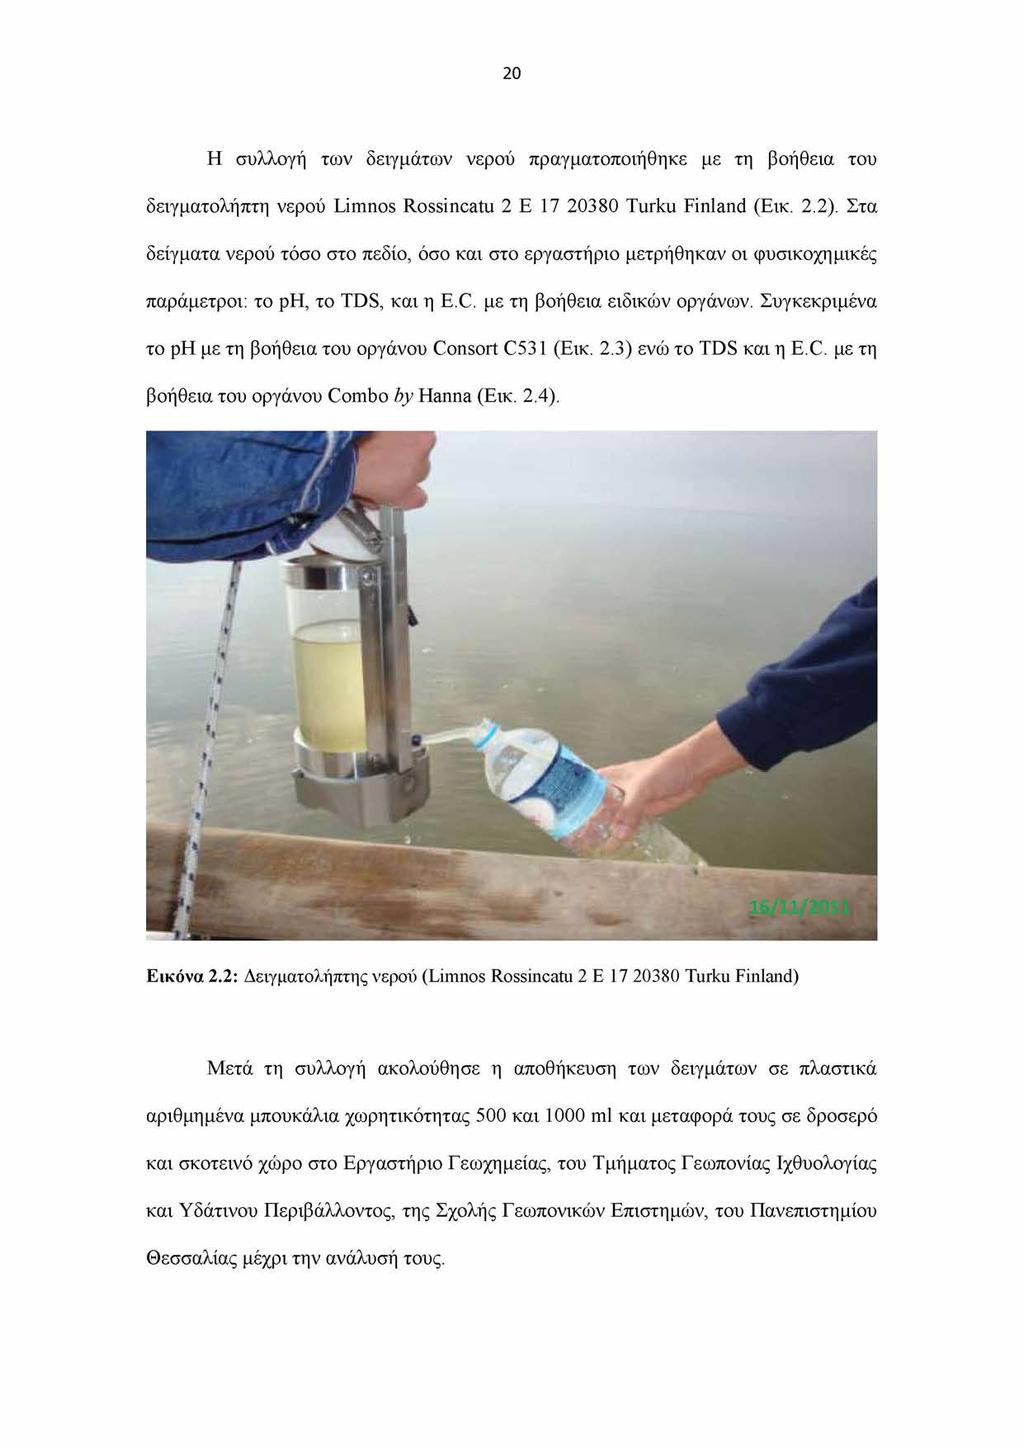 20 Η συλλογή των δειγμάτων νερού πραγματοποιήθηκε με τη βοήθεια του δειγματολήπτη νερού Limnos Rossincatu 2 E 17 20380 Turku Finland (Εικ. 2.2).